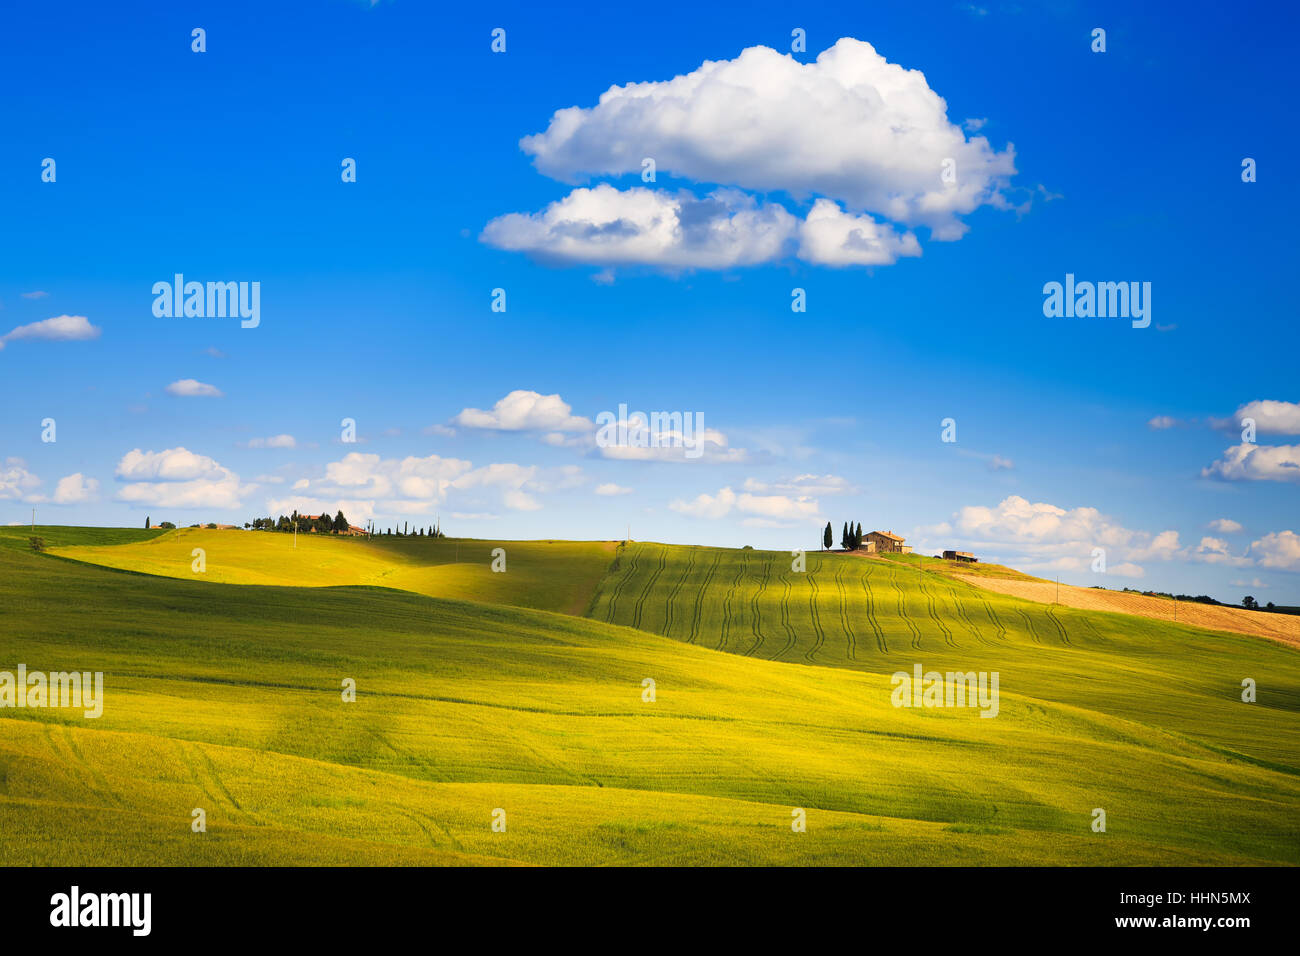 Toskana, Ackerland und Zypresse Bäume Land Landschaft, grüne Felder. Pienza, Italien, Europa. Stockfoto